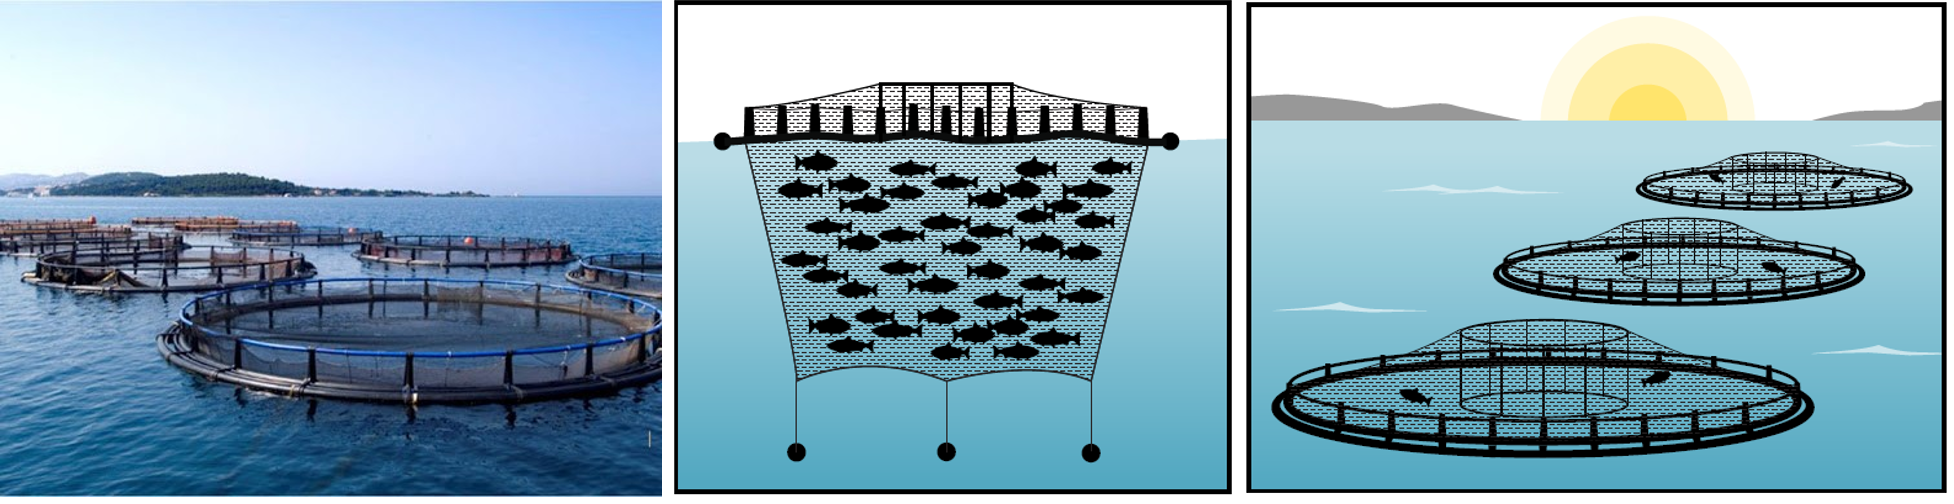 méthodes d'élevage cages à saumon